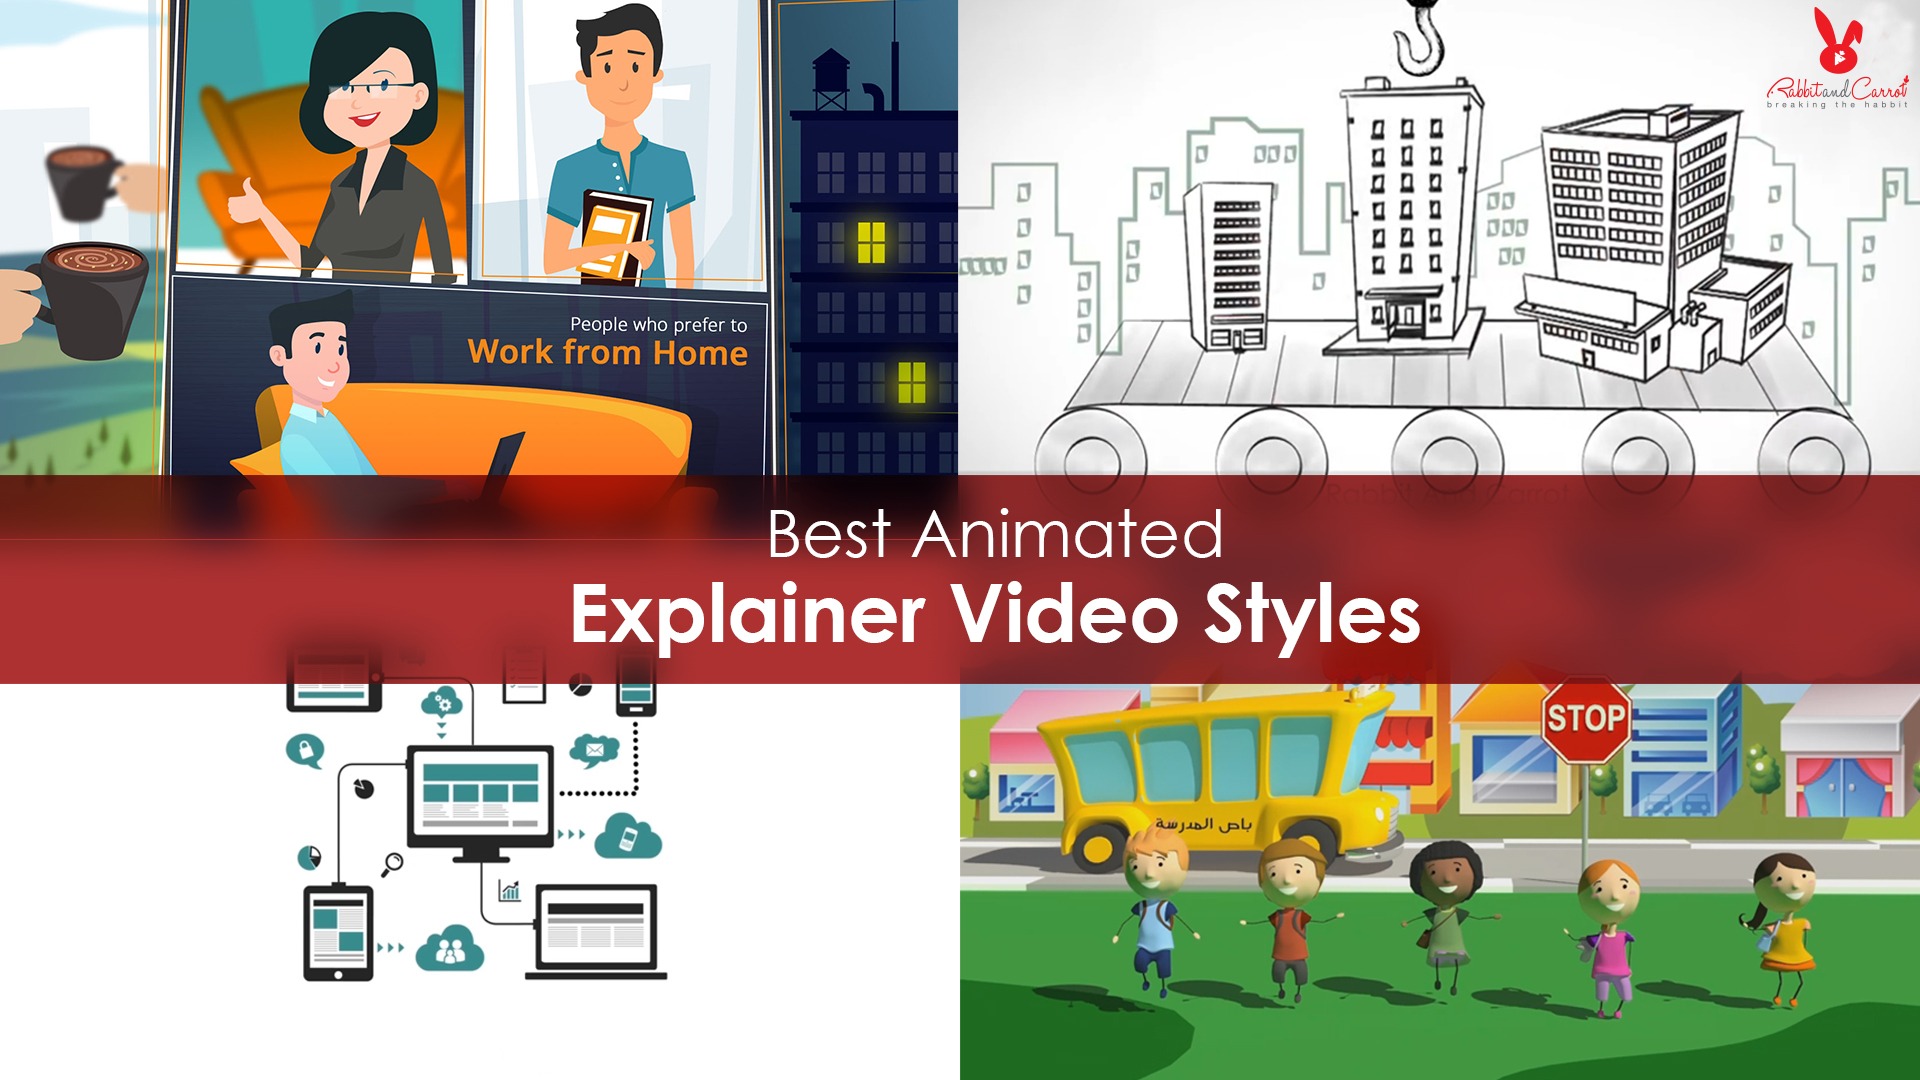 best explainer video tools 2017